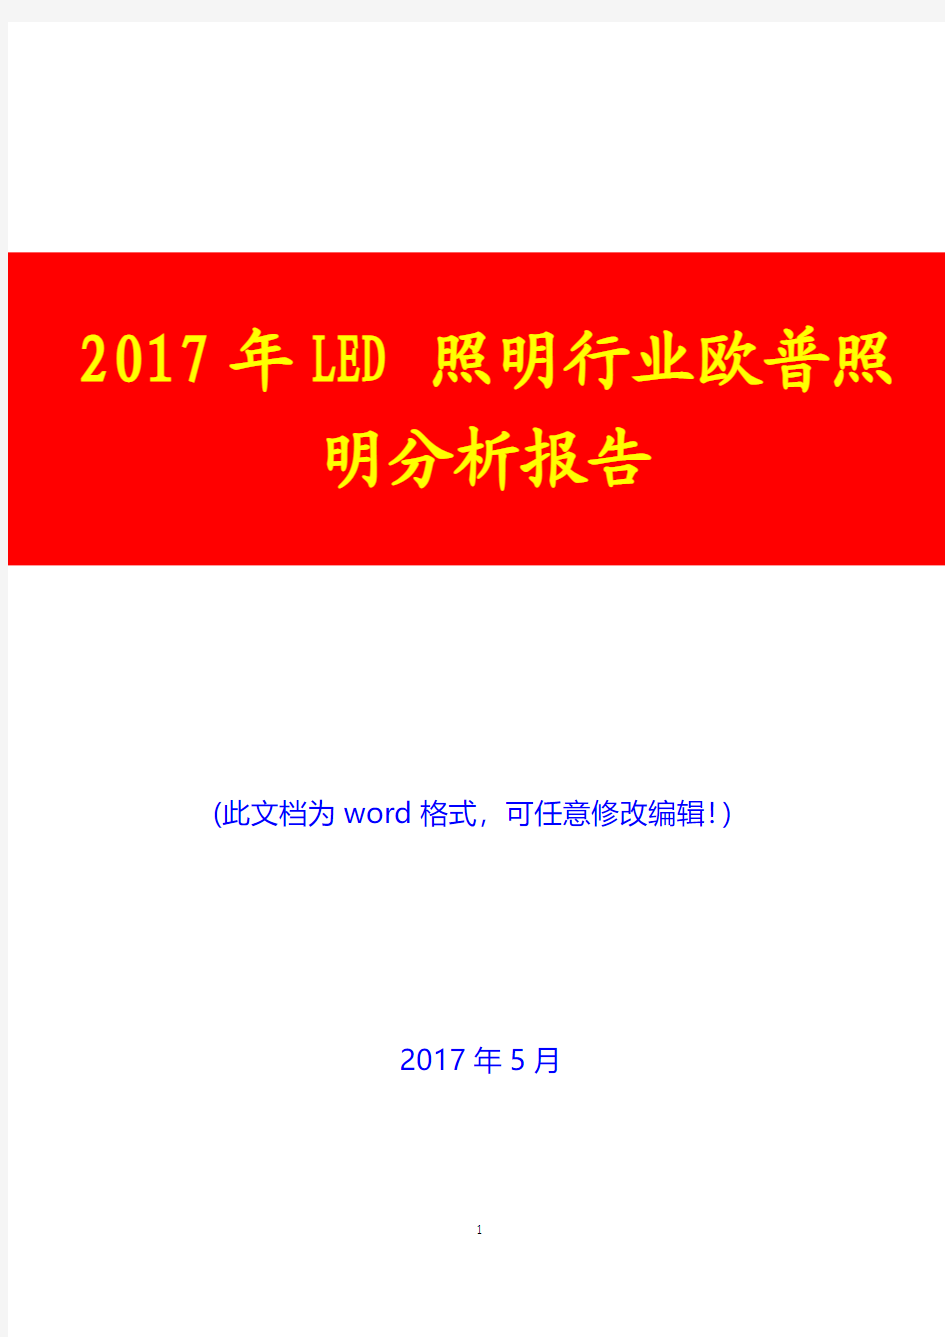 2017年LED照明行业欧普照明分析报告